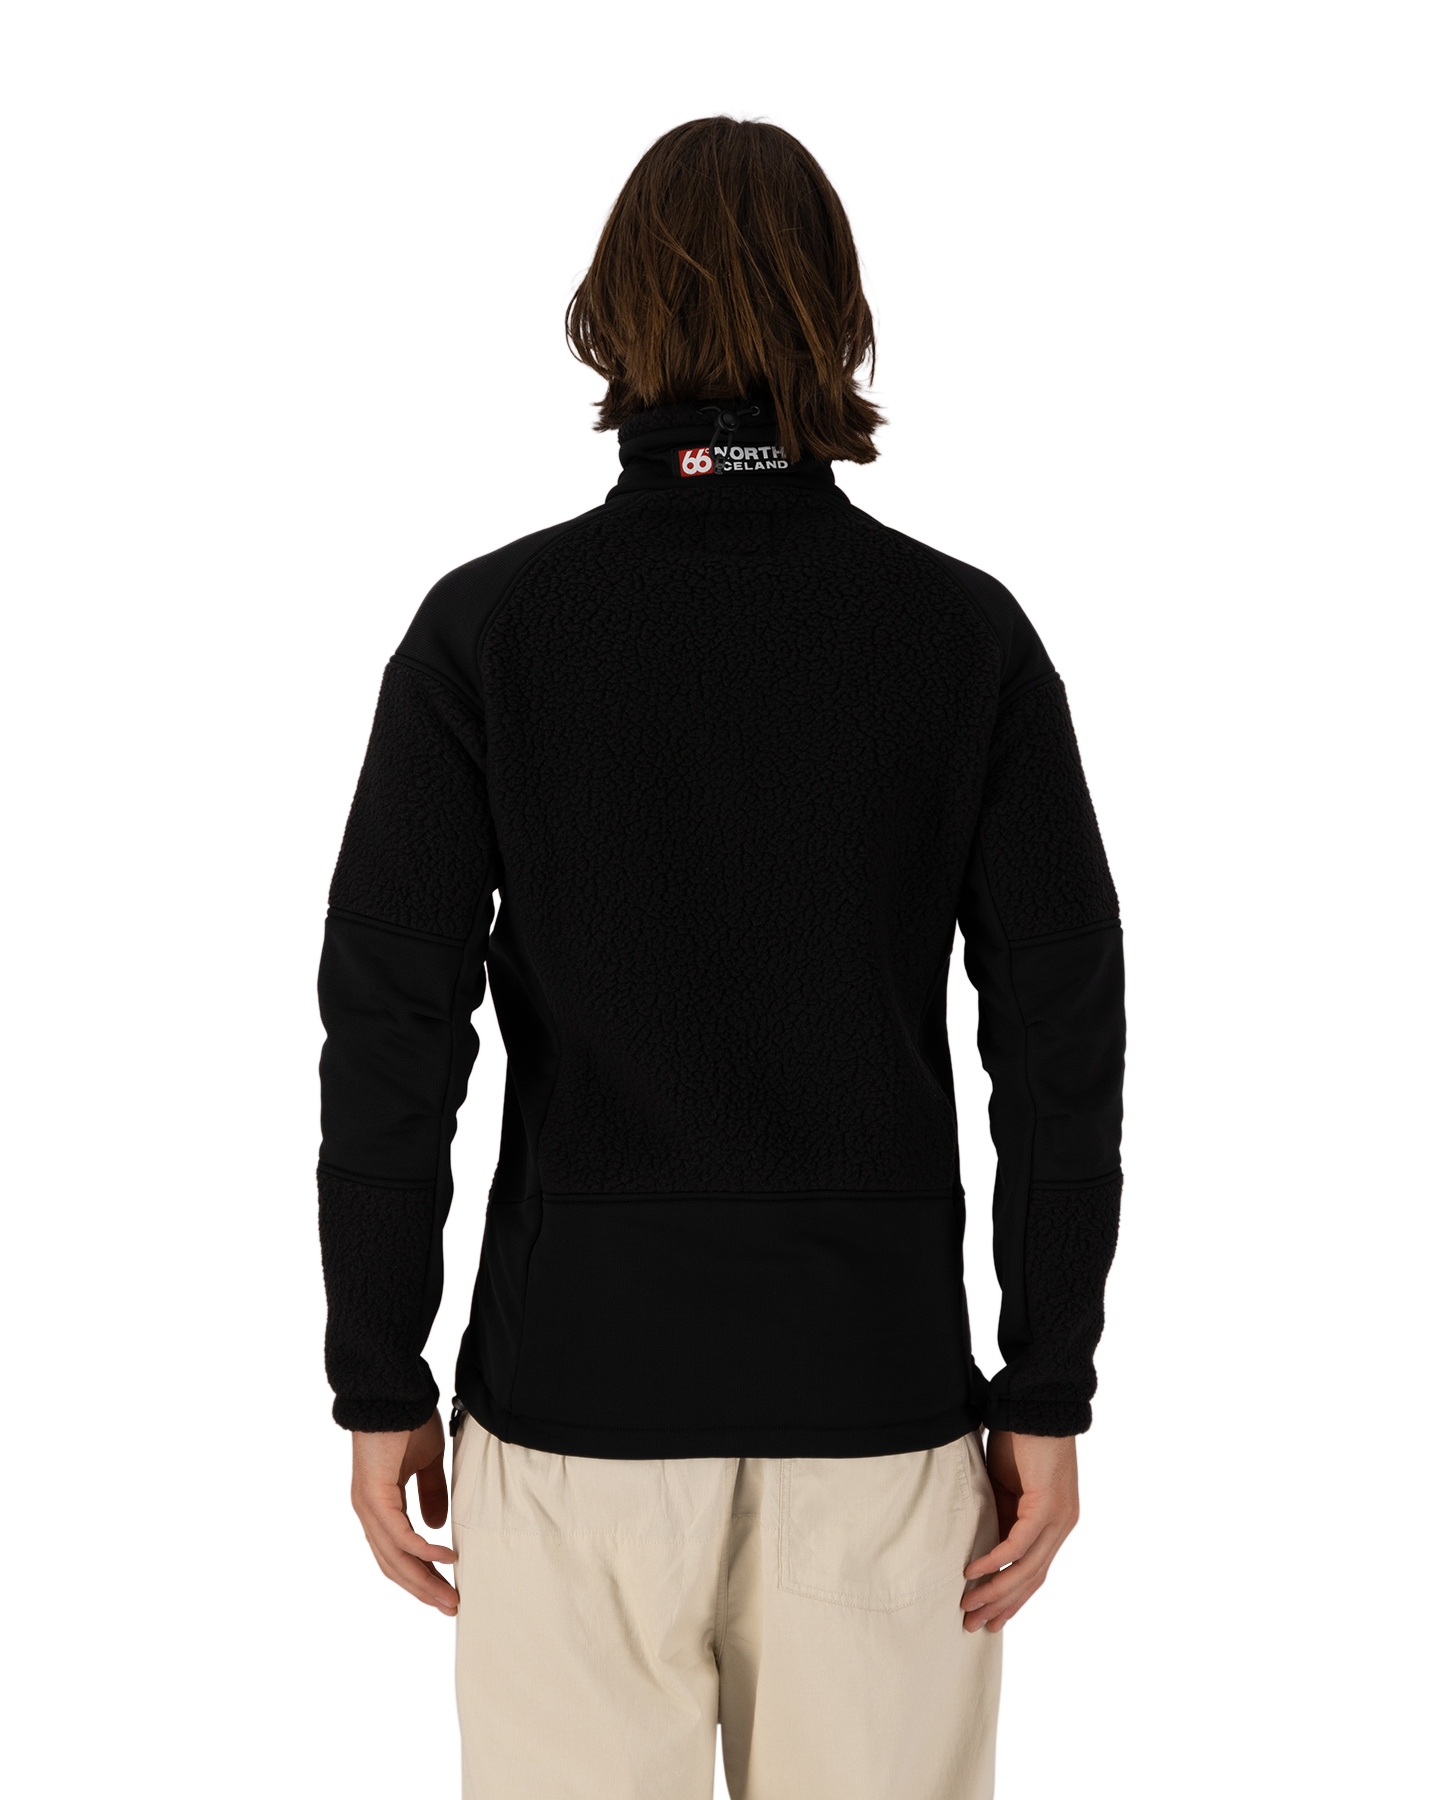 66 North Tindur Shearling Jacket BLACK 6